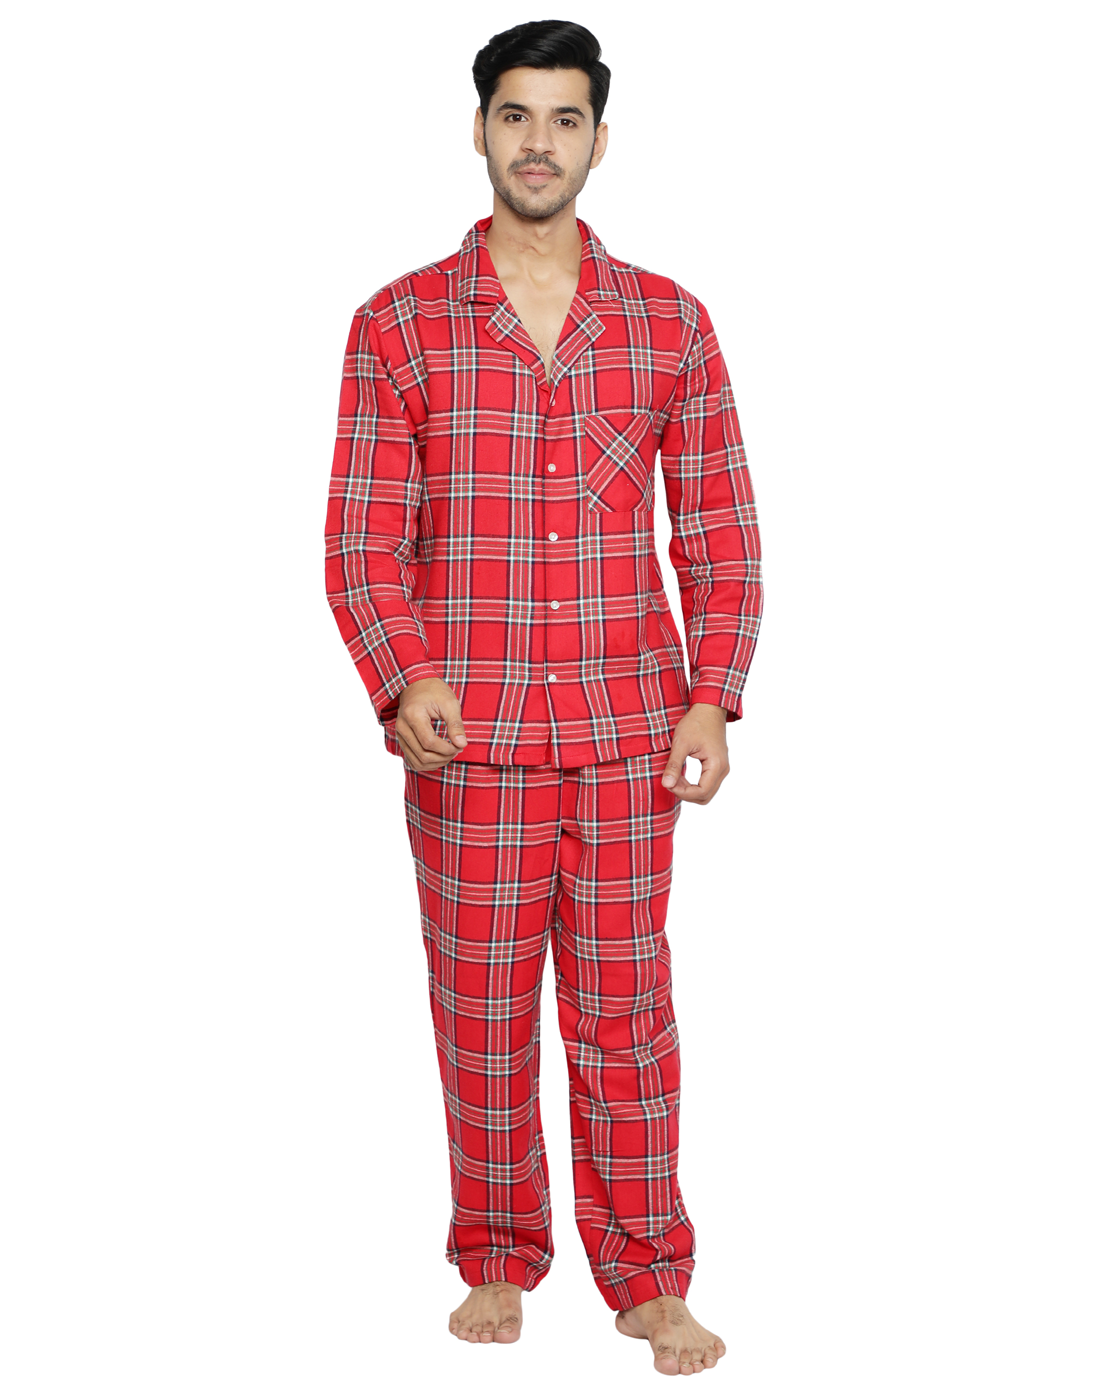 Pyjama Set for Men-Red Checks